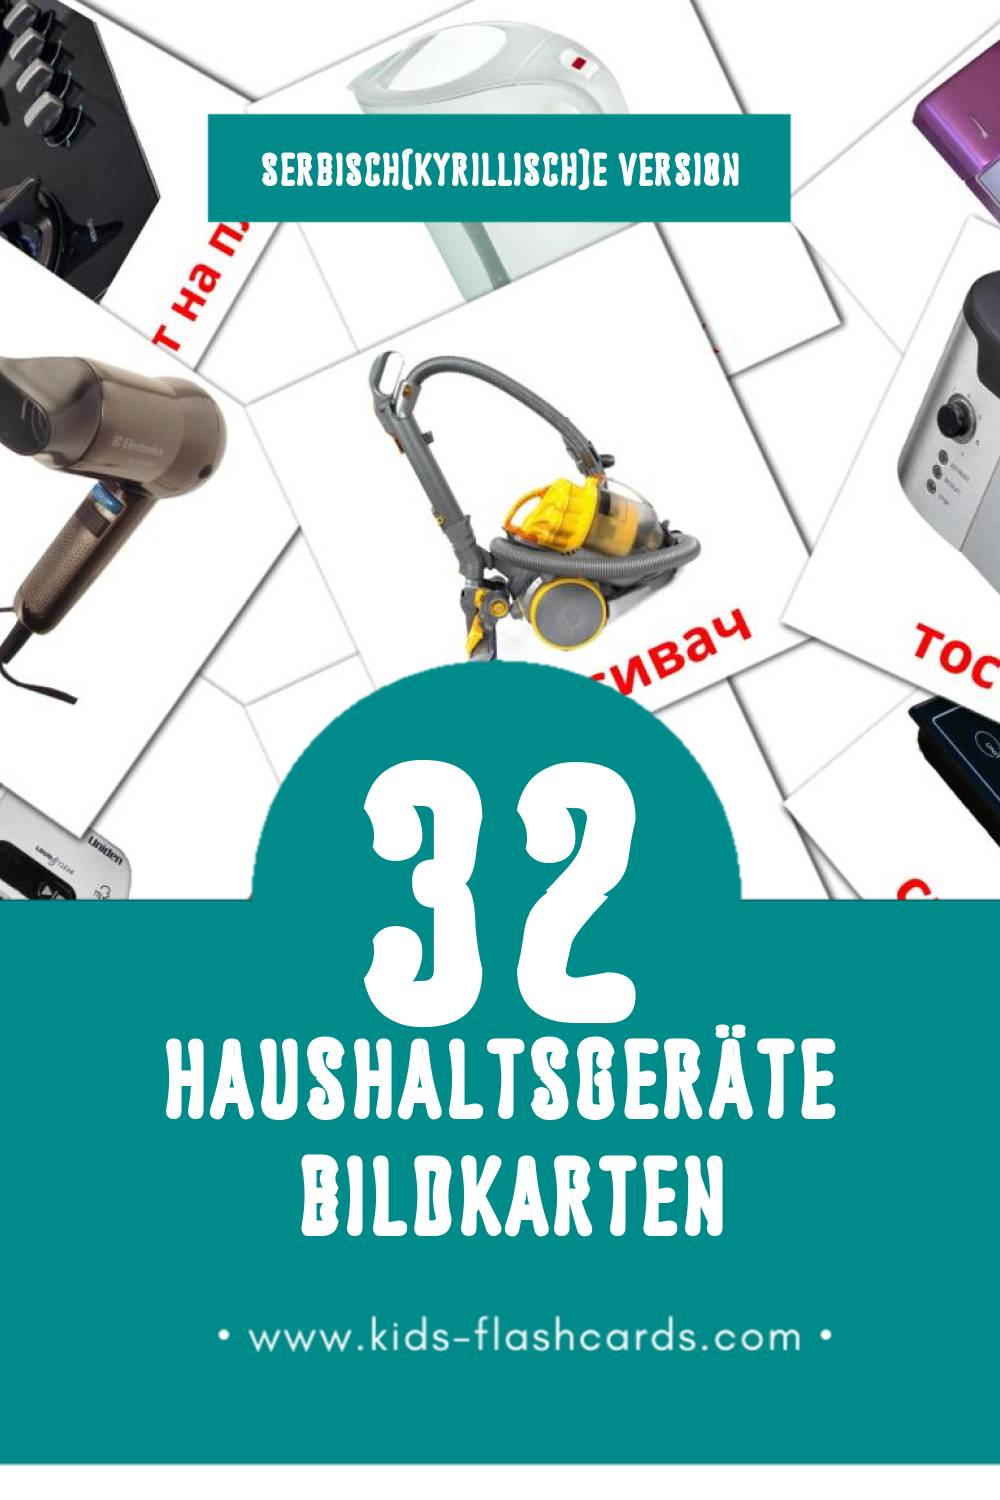 Visual апарати за домаћинство Flashcards für Kleinkinder (32 Karten in Serbisch(kyrillisch))